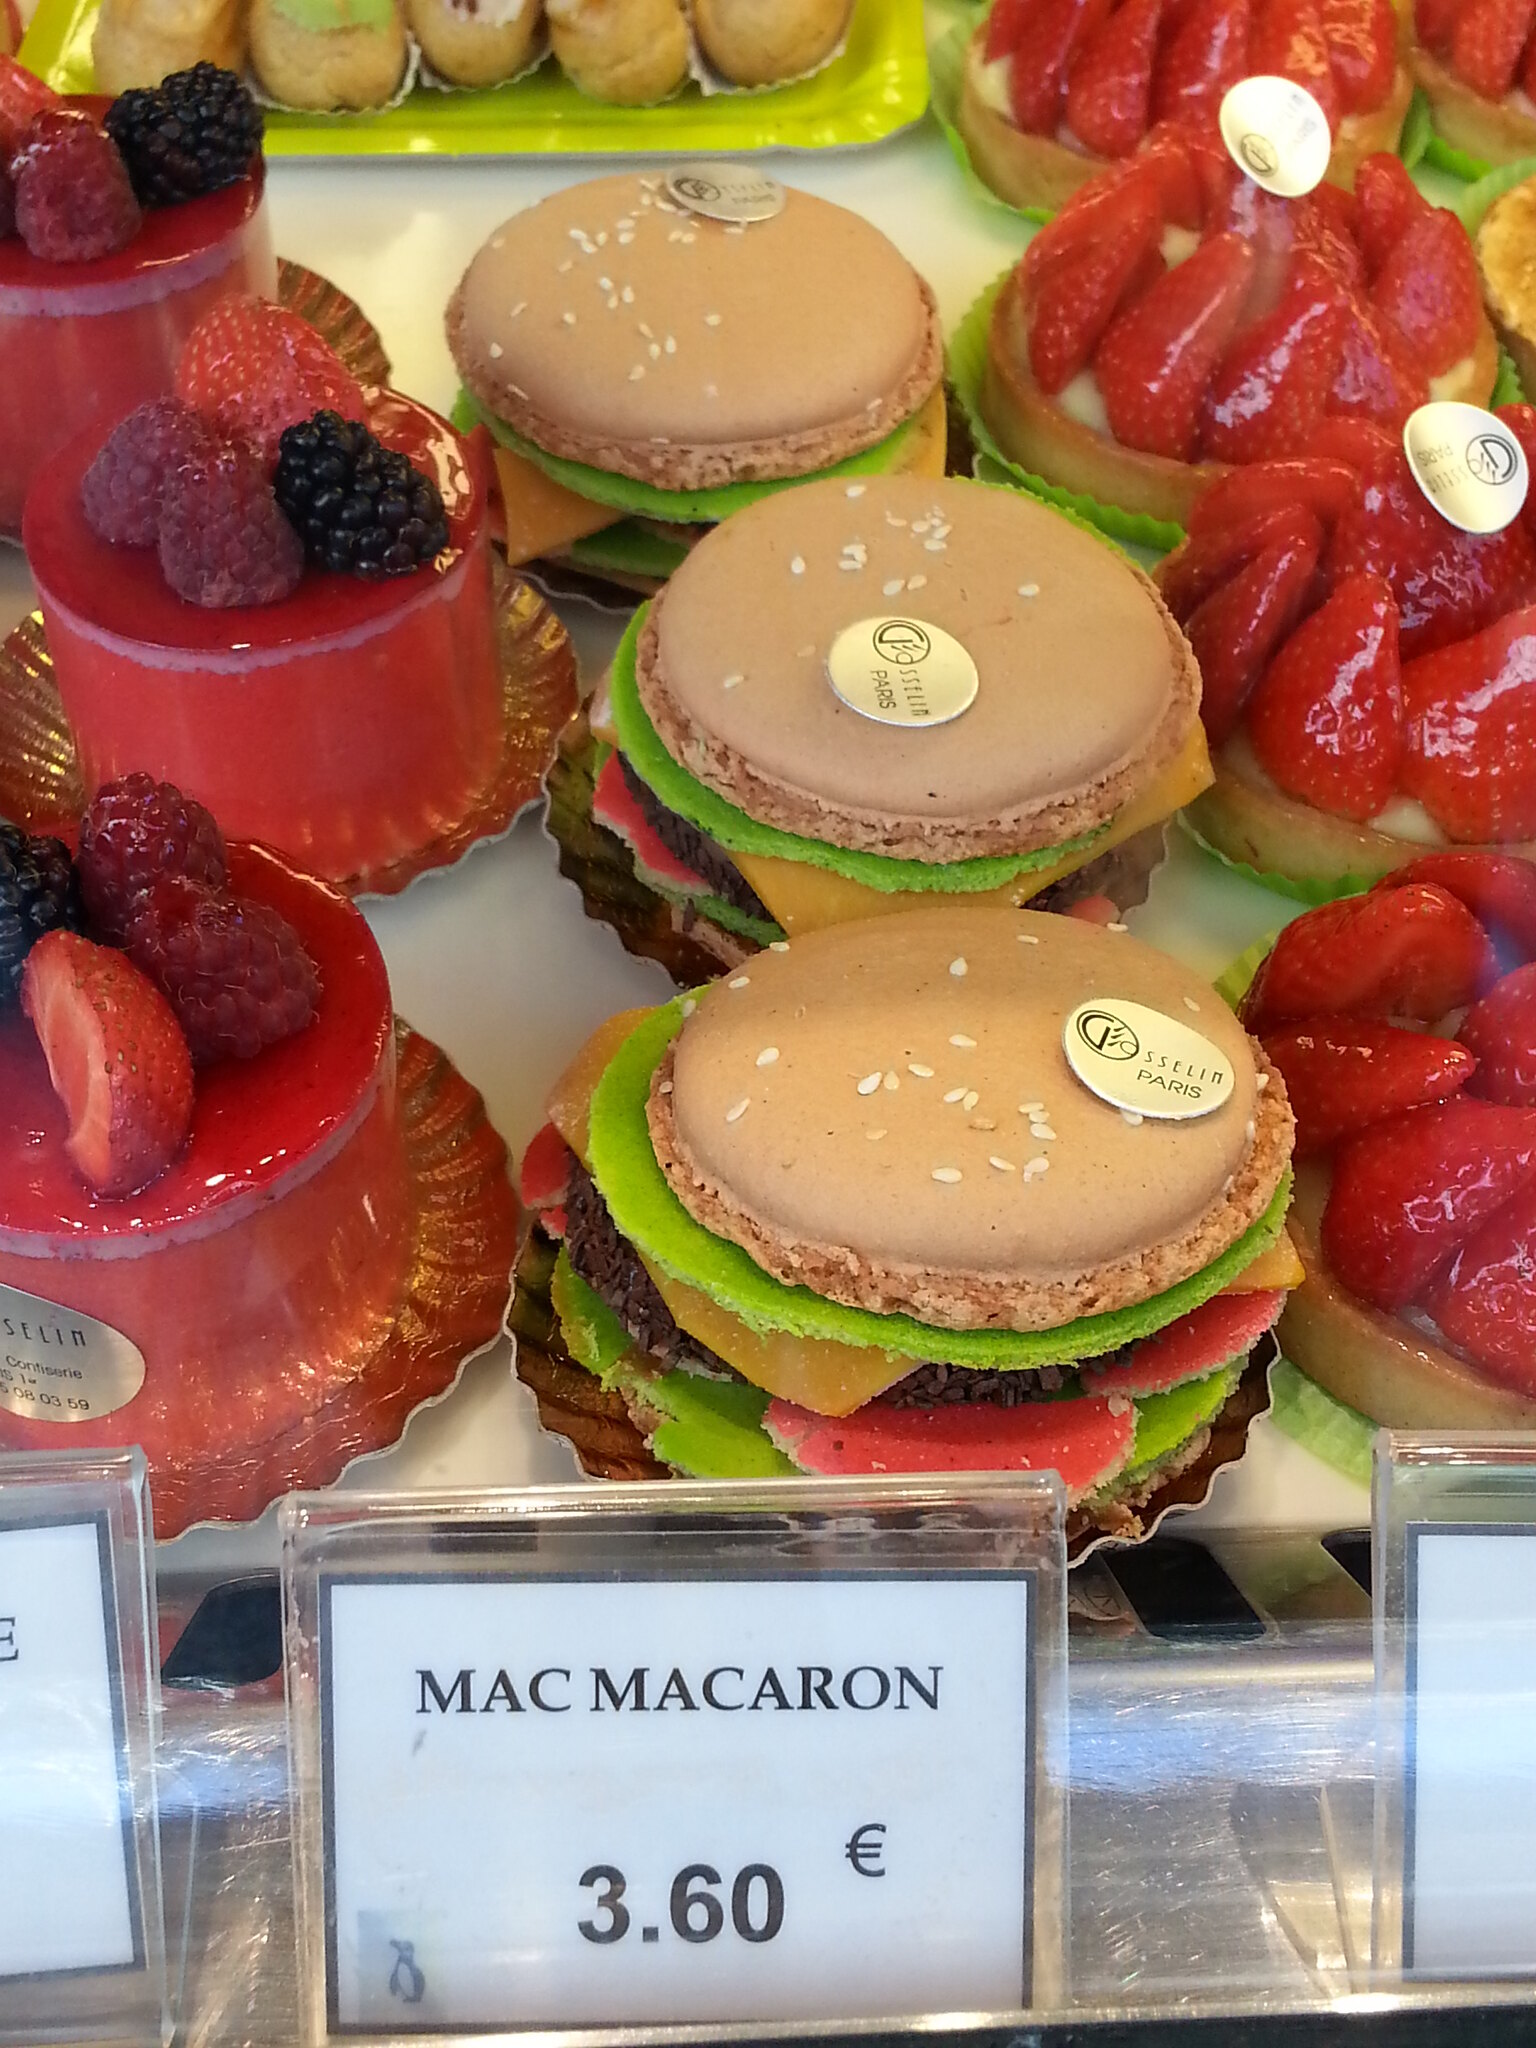 Week 1 Mac macarons at Gosselin-Philippe (didn't buy 'em) 7-3-14